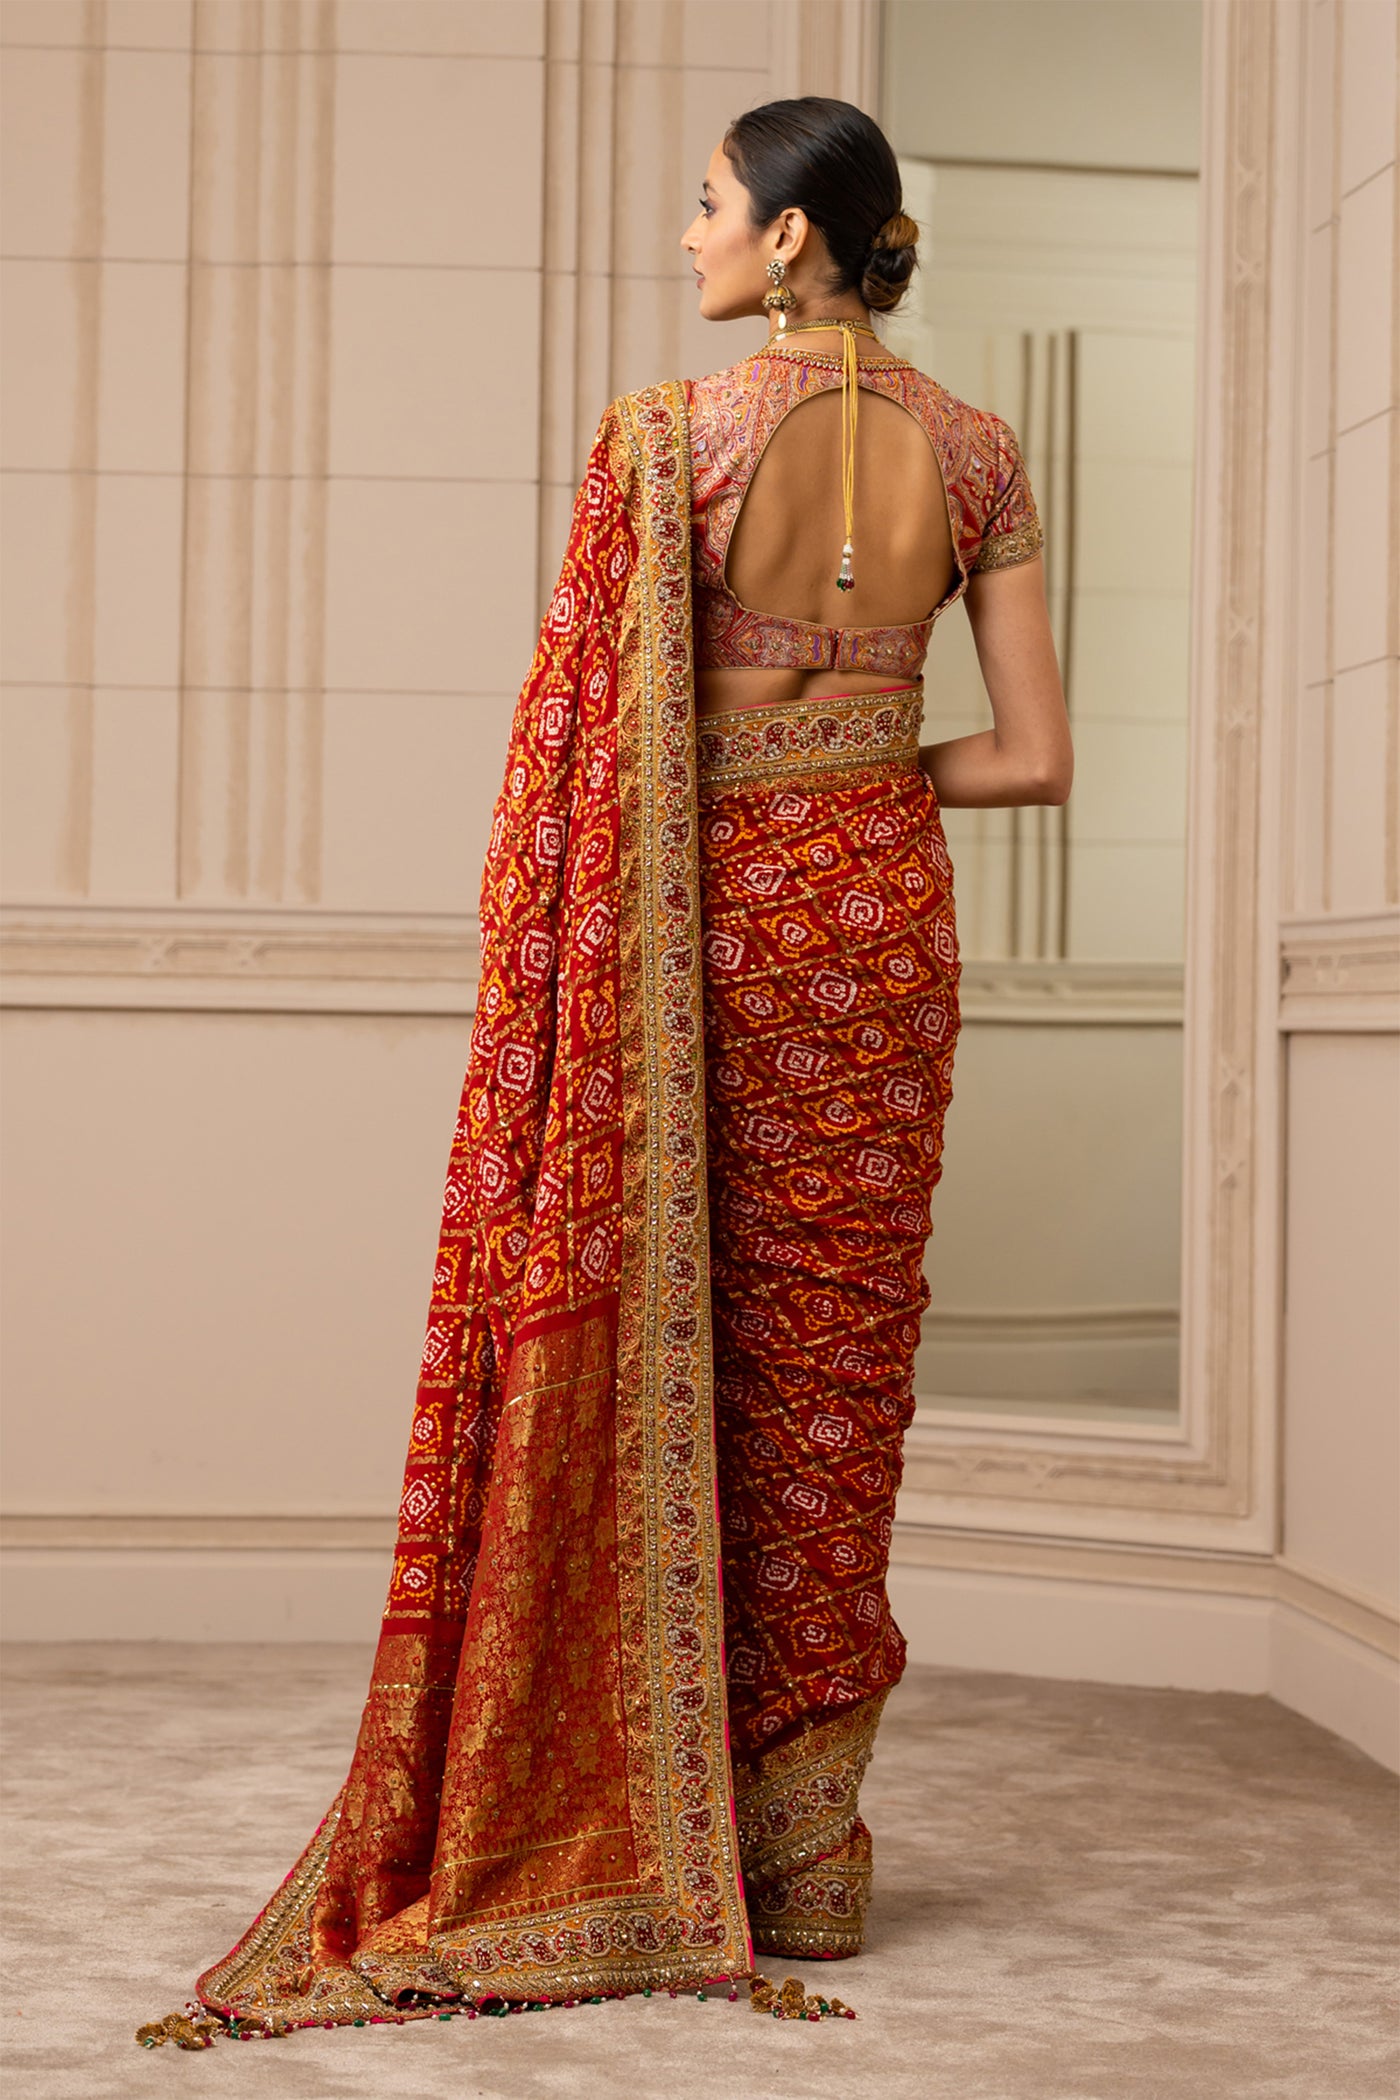 Tarun tahiliani Gharchola Saree red online shopping melange singapore indian designer wear wedding indian bridal